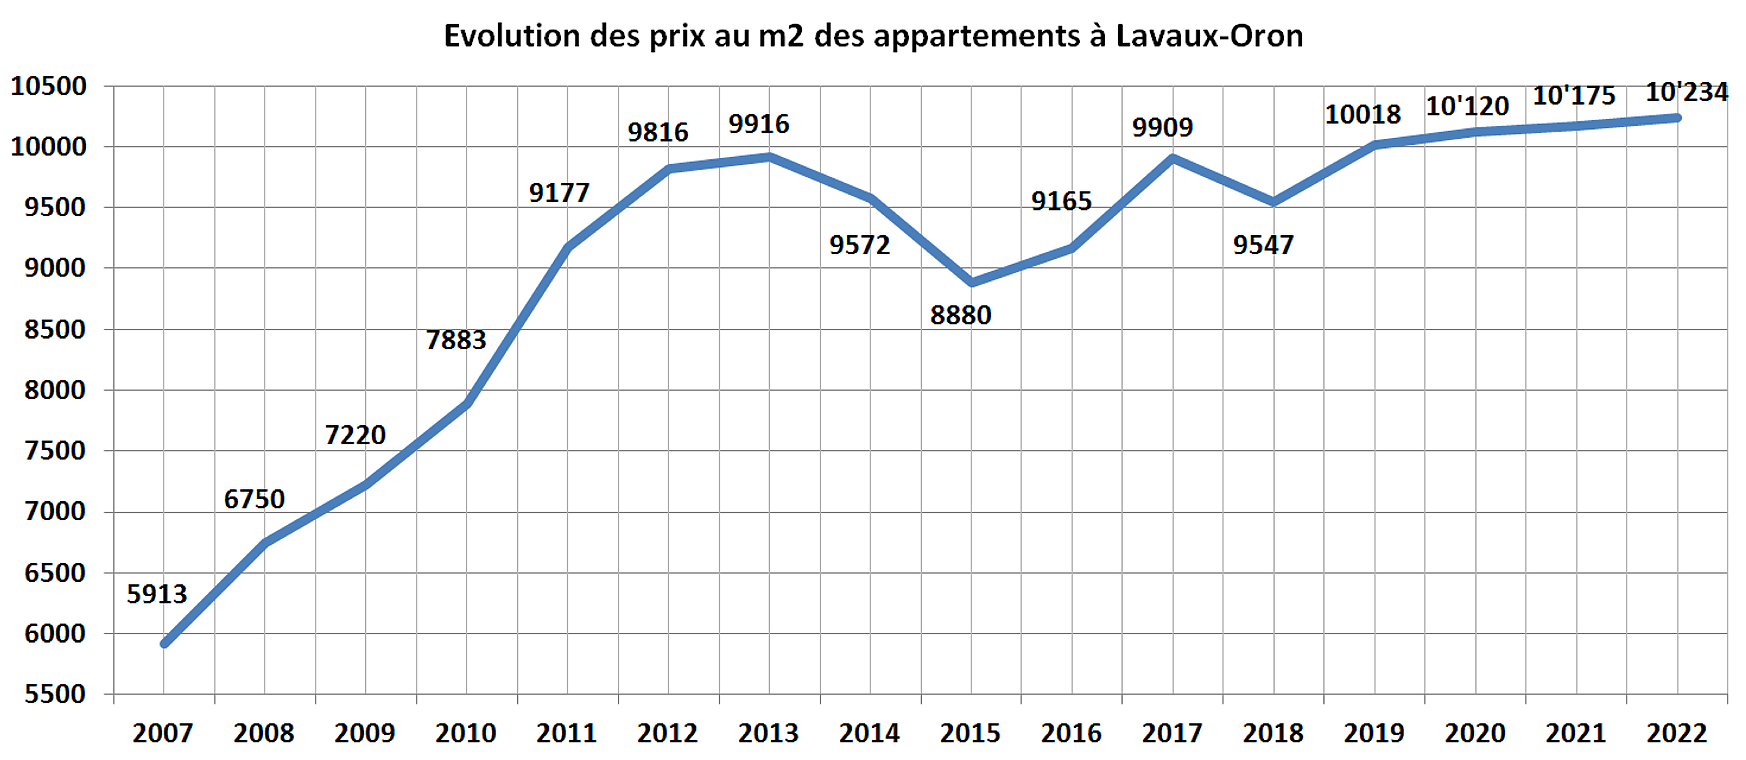 evolution prix m2 appartement lavaux oron 2022